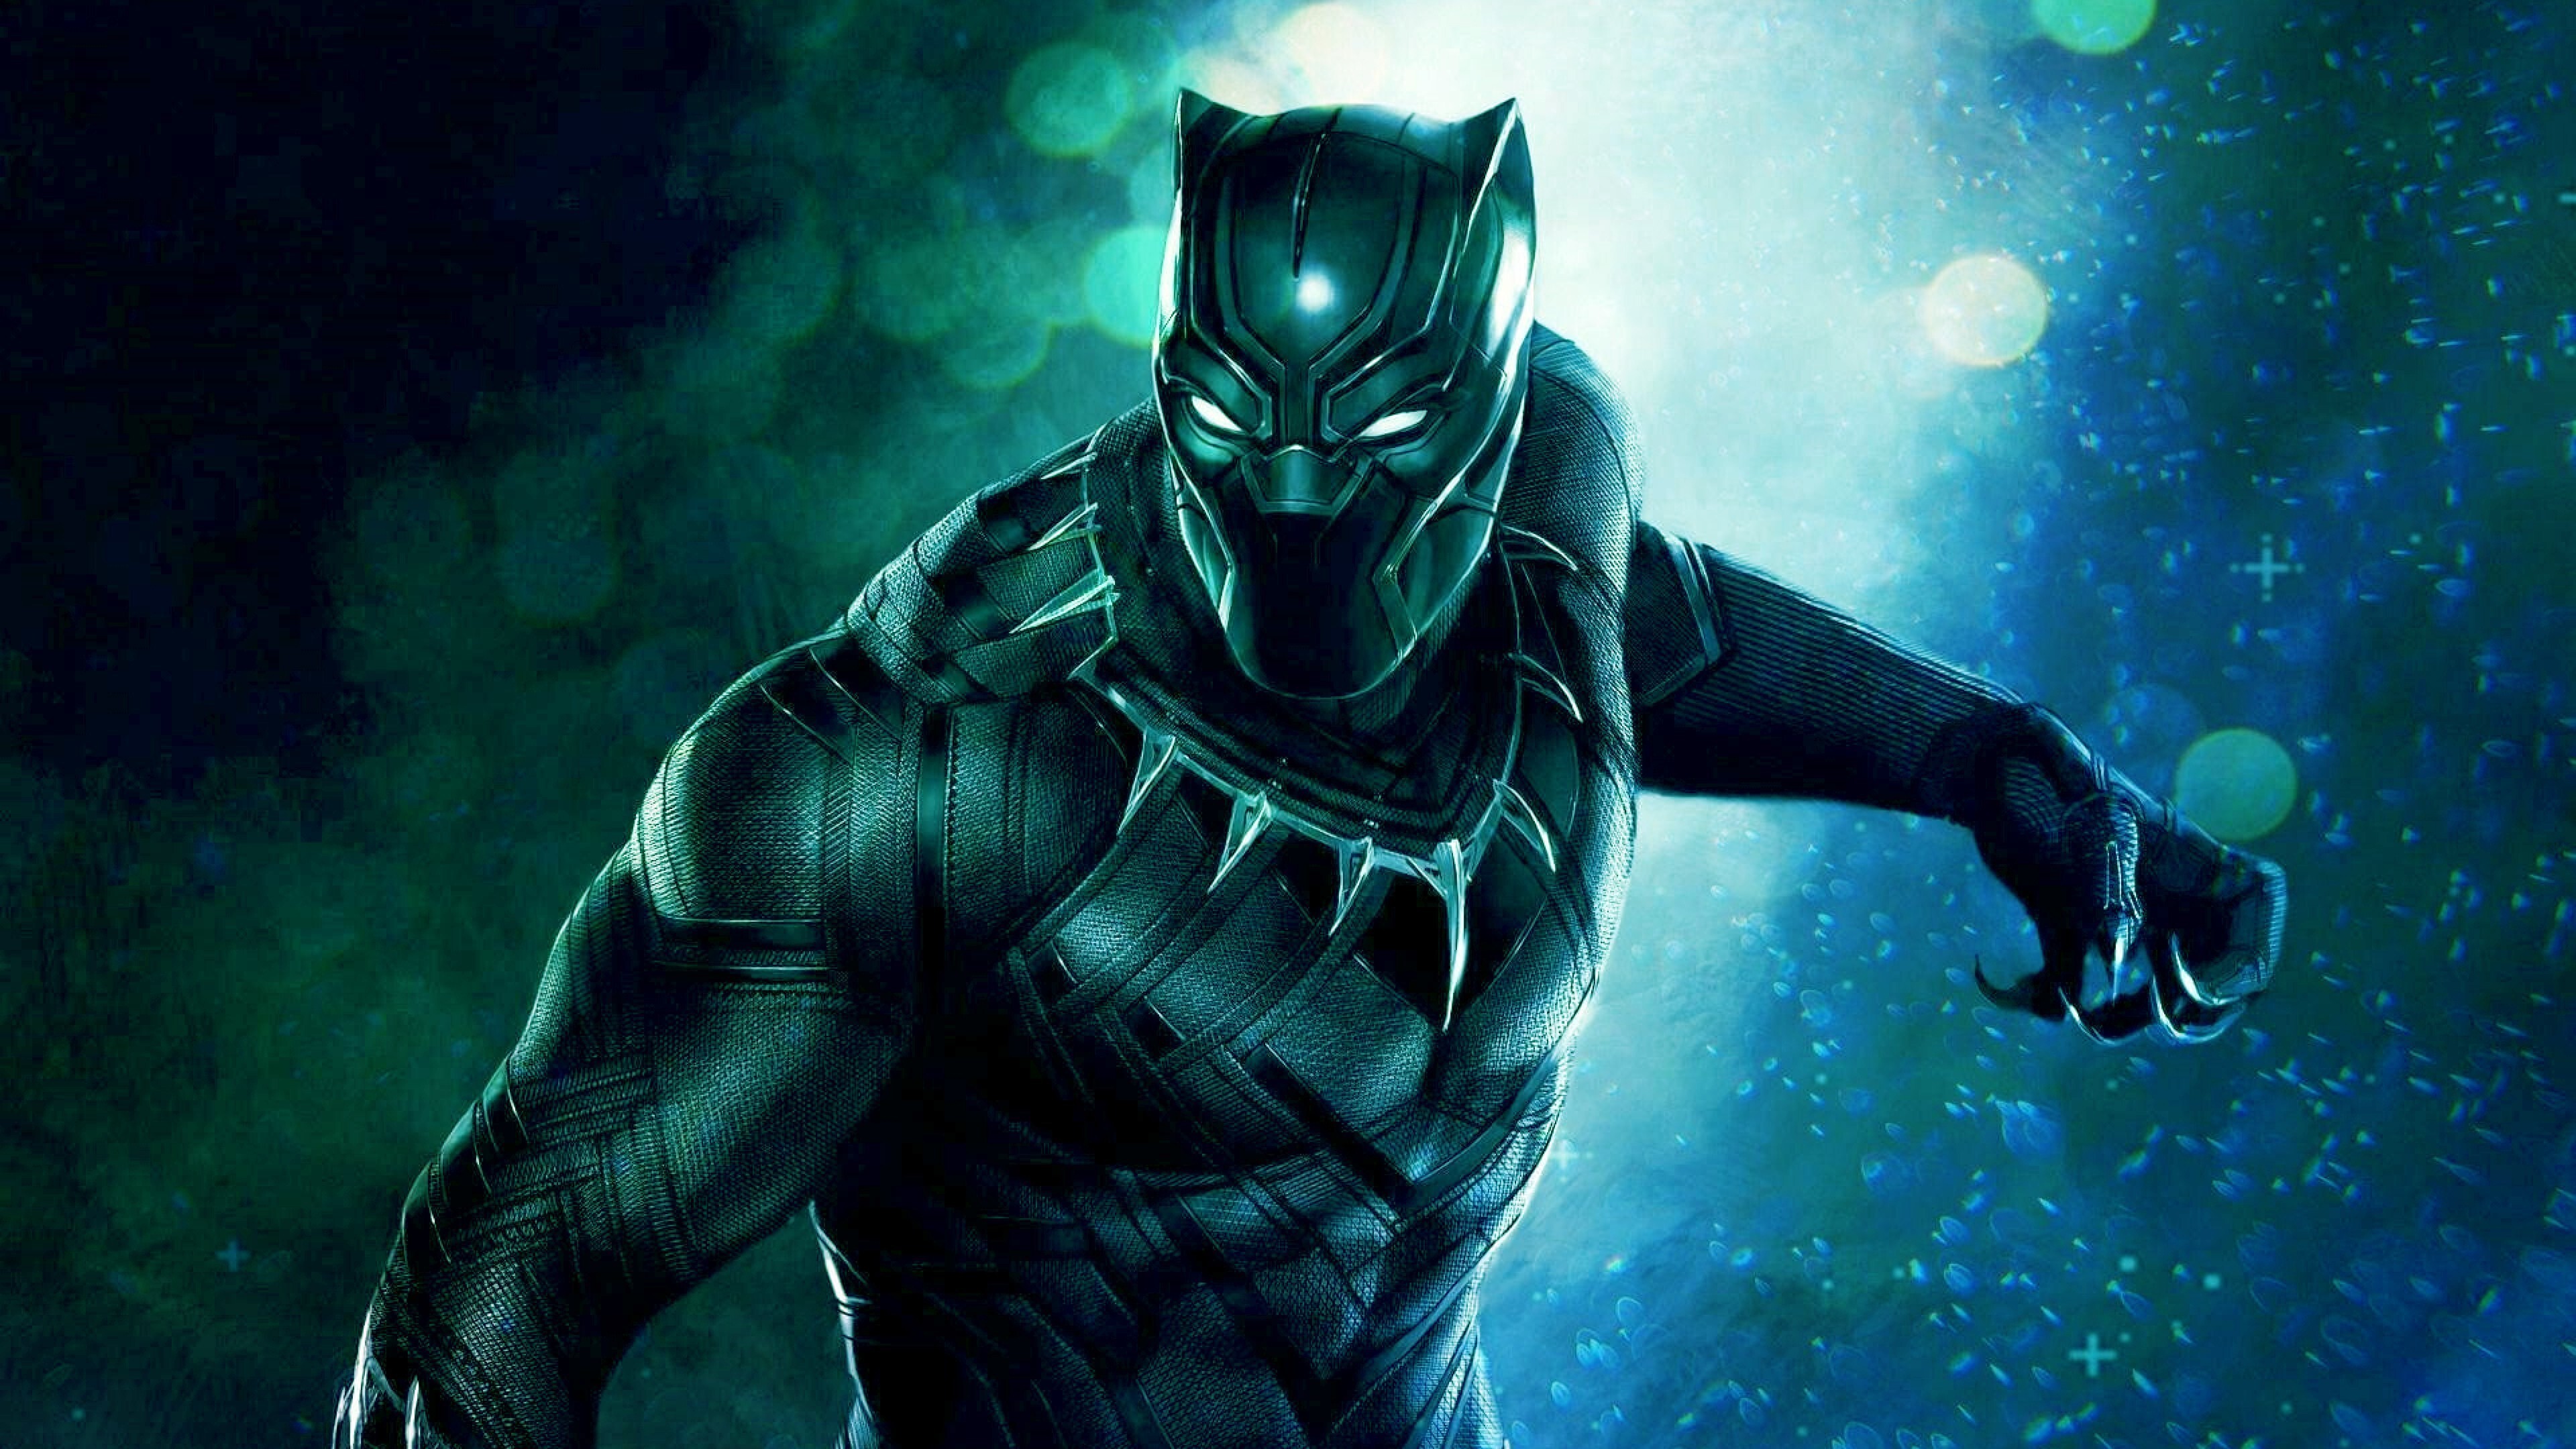 4K Image of Black Panther Superhero